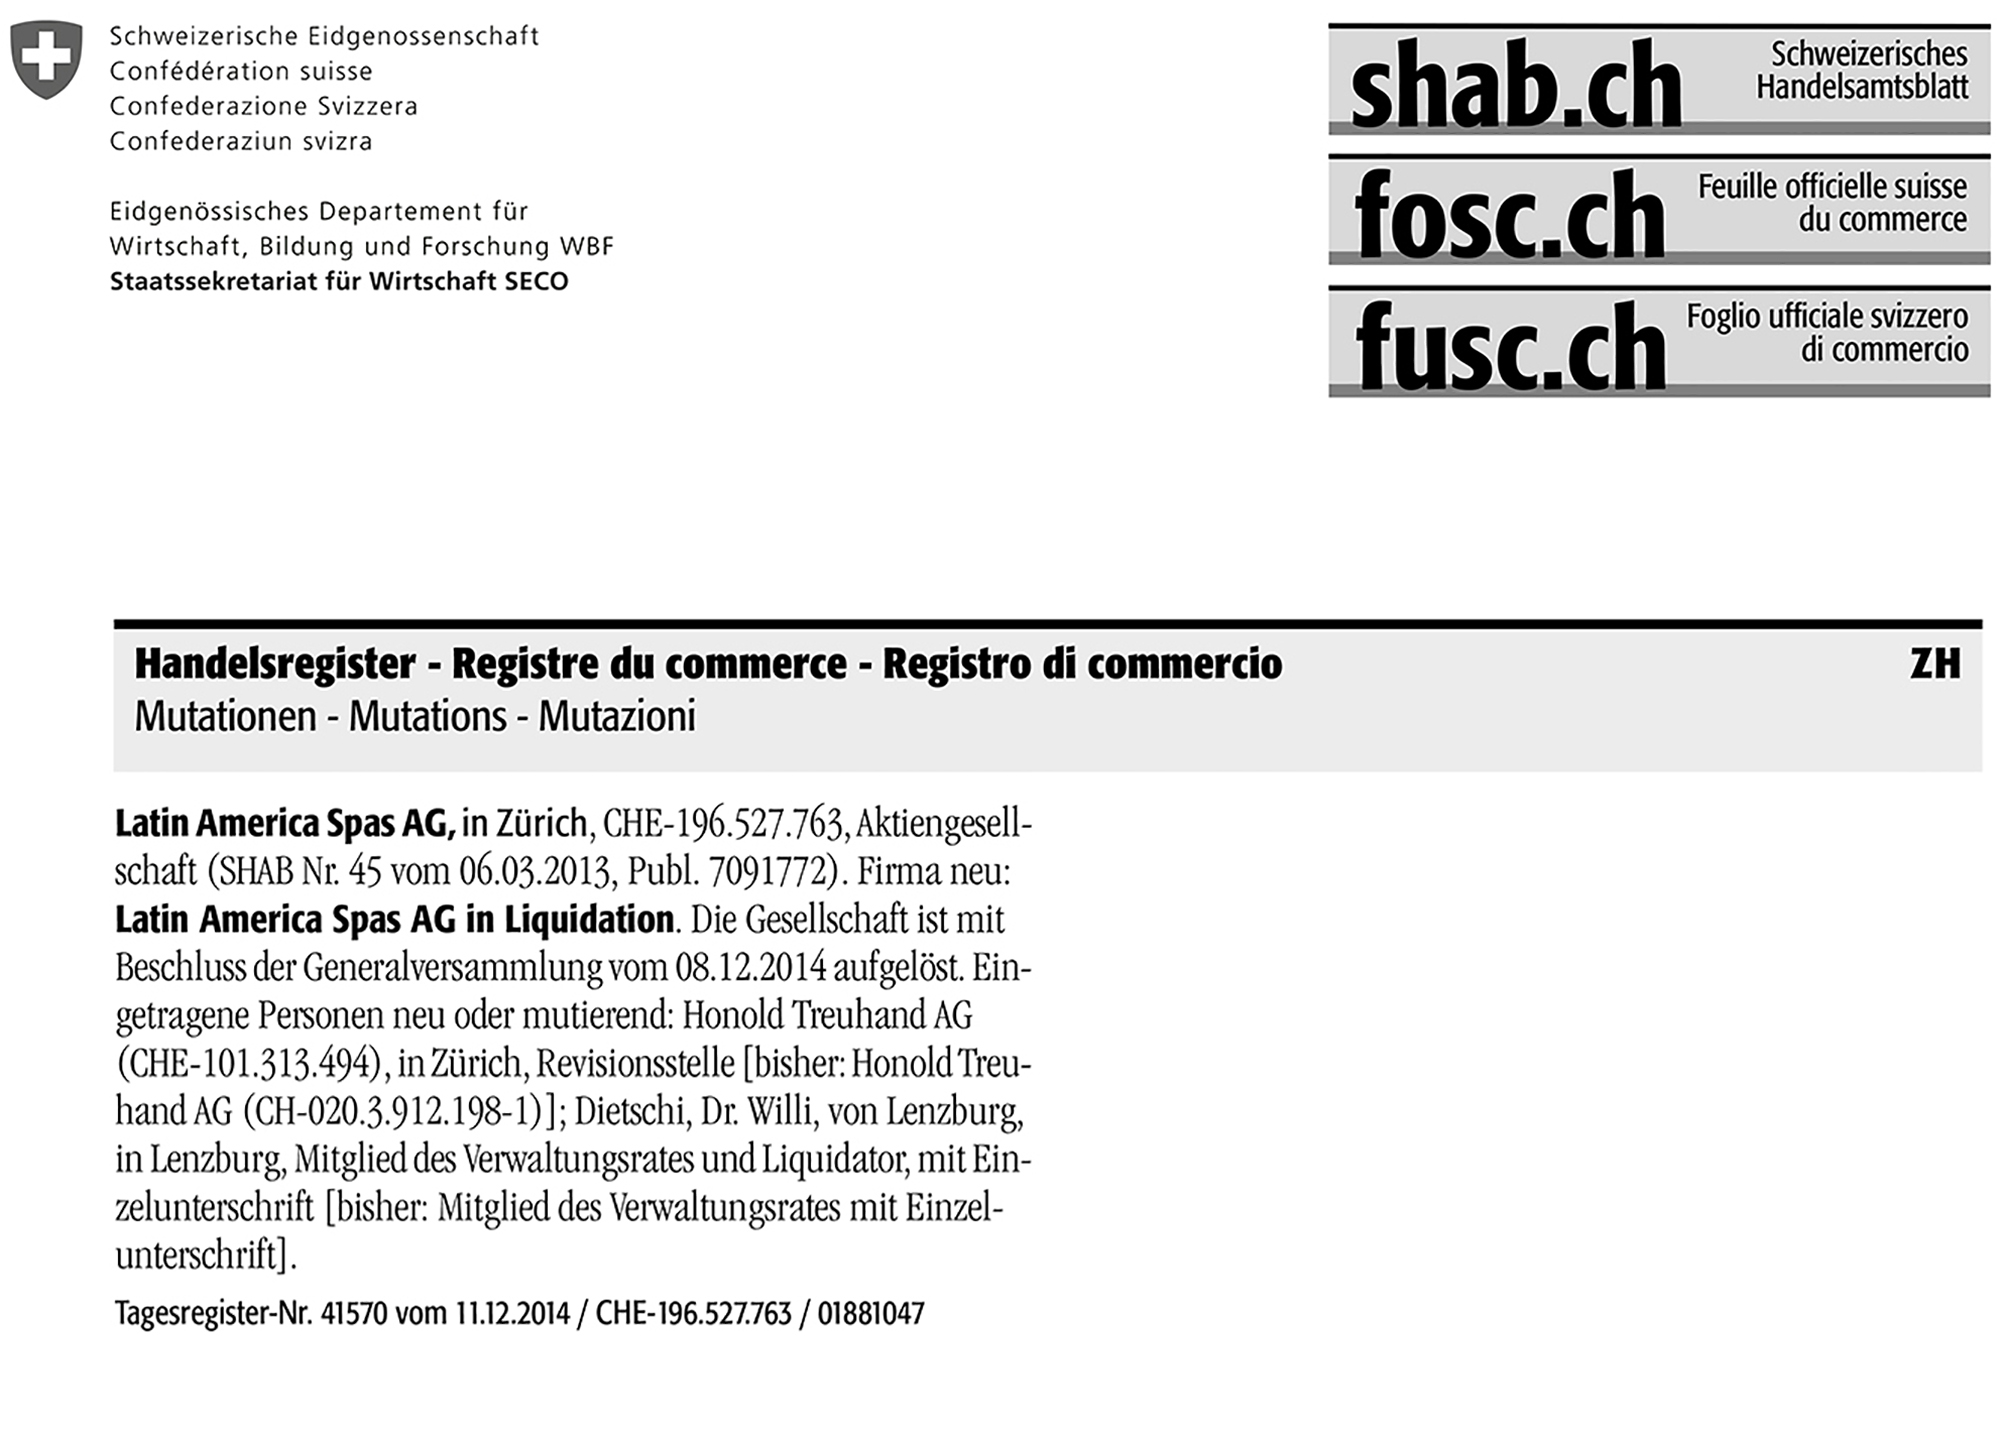 Documento del Registro Público de Empresas de Suiza confirman la creación y liquidación de una empresa relacionada con Ada Mitchell Guzmán Sigüenza, la esposa del expresidente Funes.